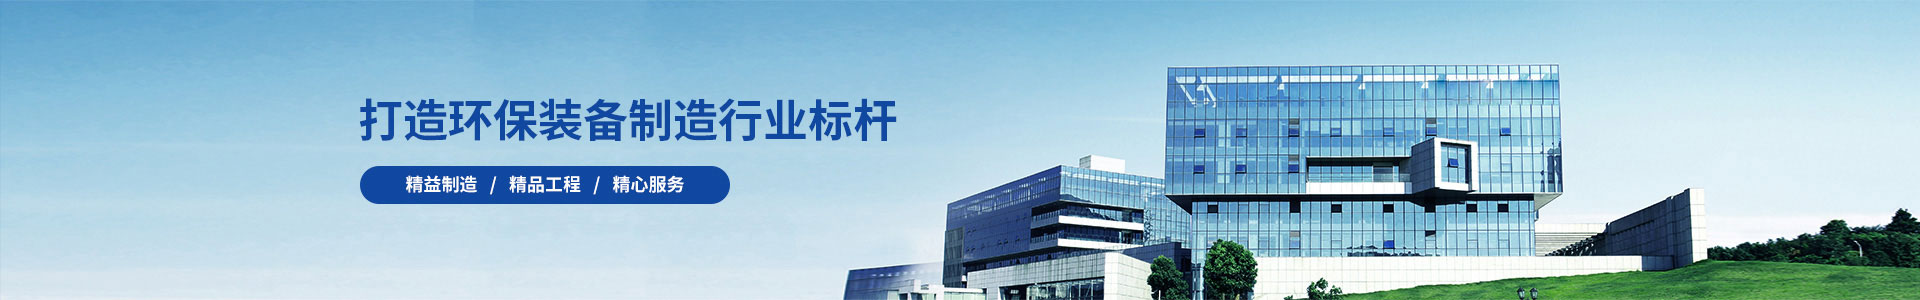 企业新闻-PBOOTCMS智能环保机械五金设备类企业网站s模板蓝色营销型源码(PC+WAP)